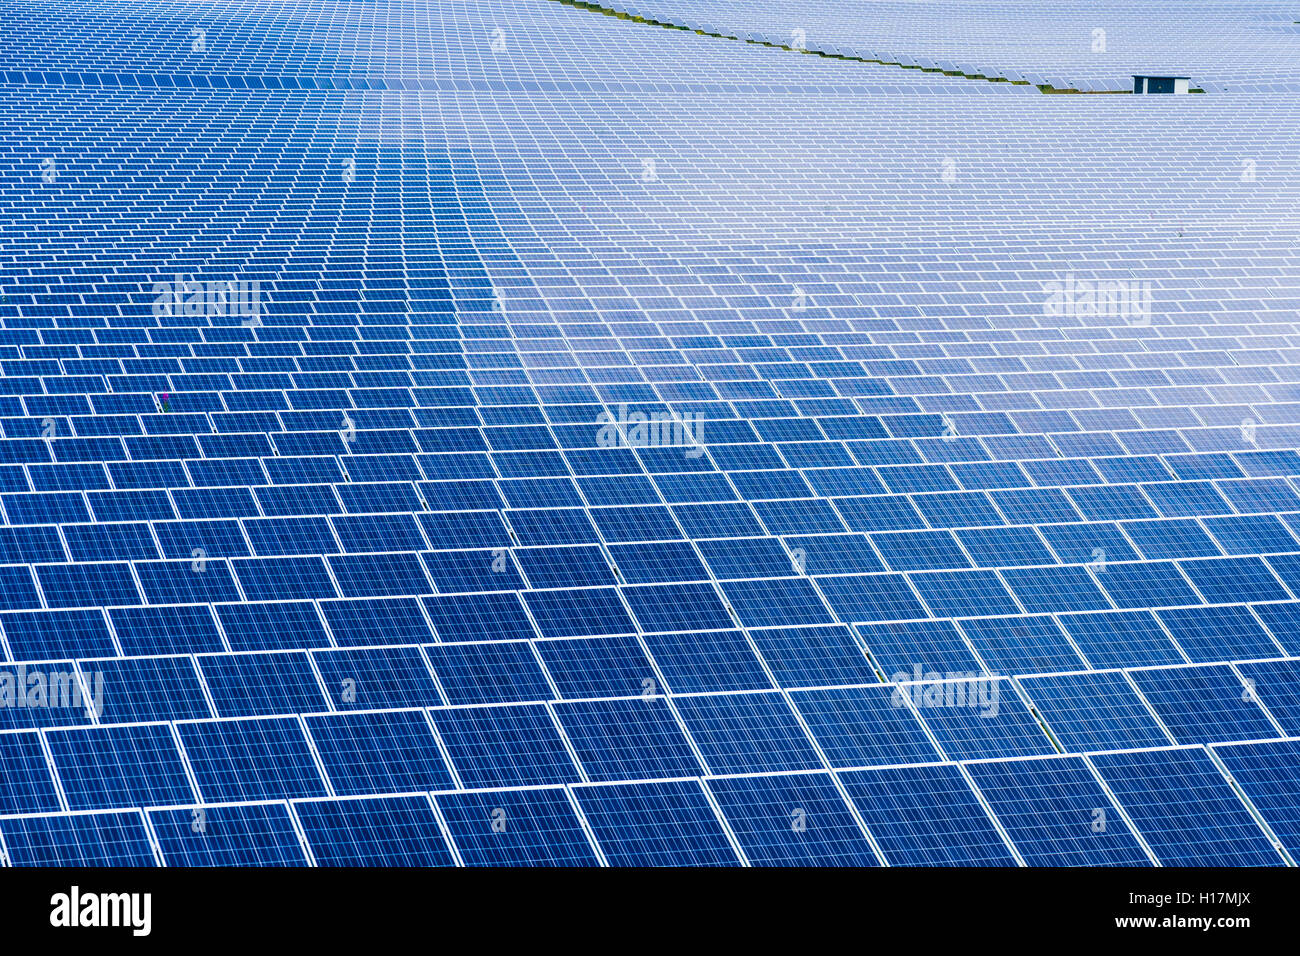 De nombreux panneaux solaires photovolta que font partie d'une grande centrale solaire, Buckendorf, Bavière, Allemagne Banque D'Images